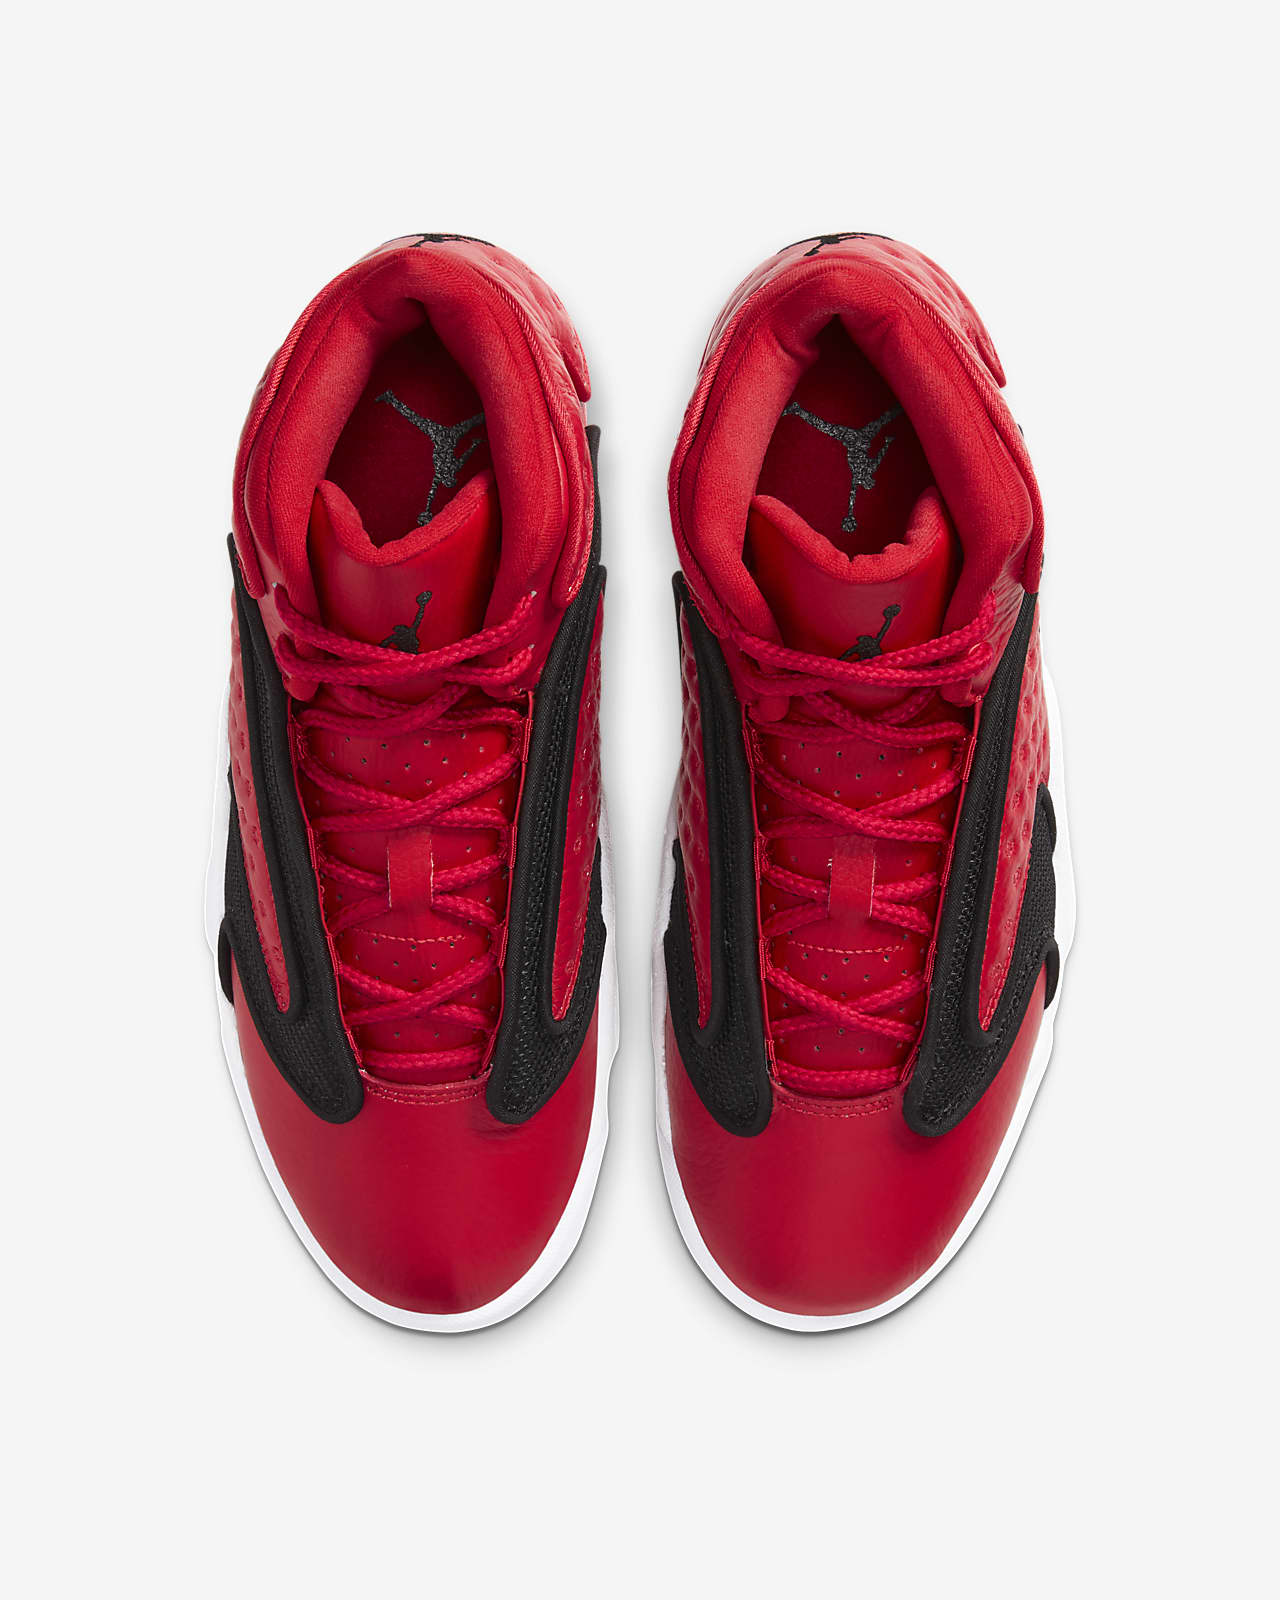 air jordan shoes red